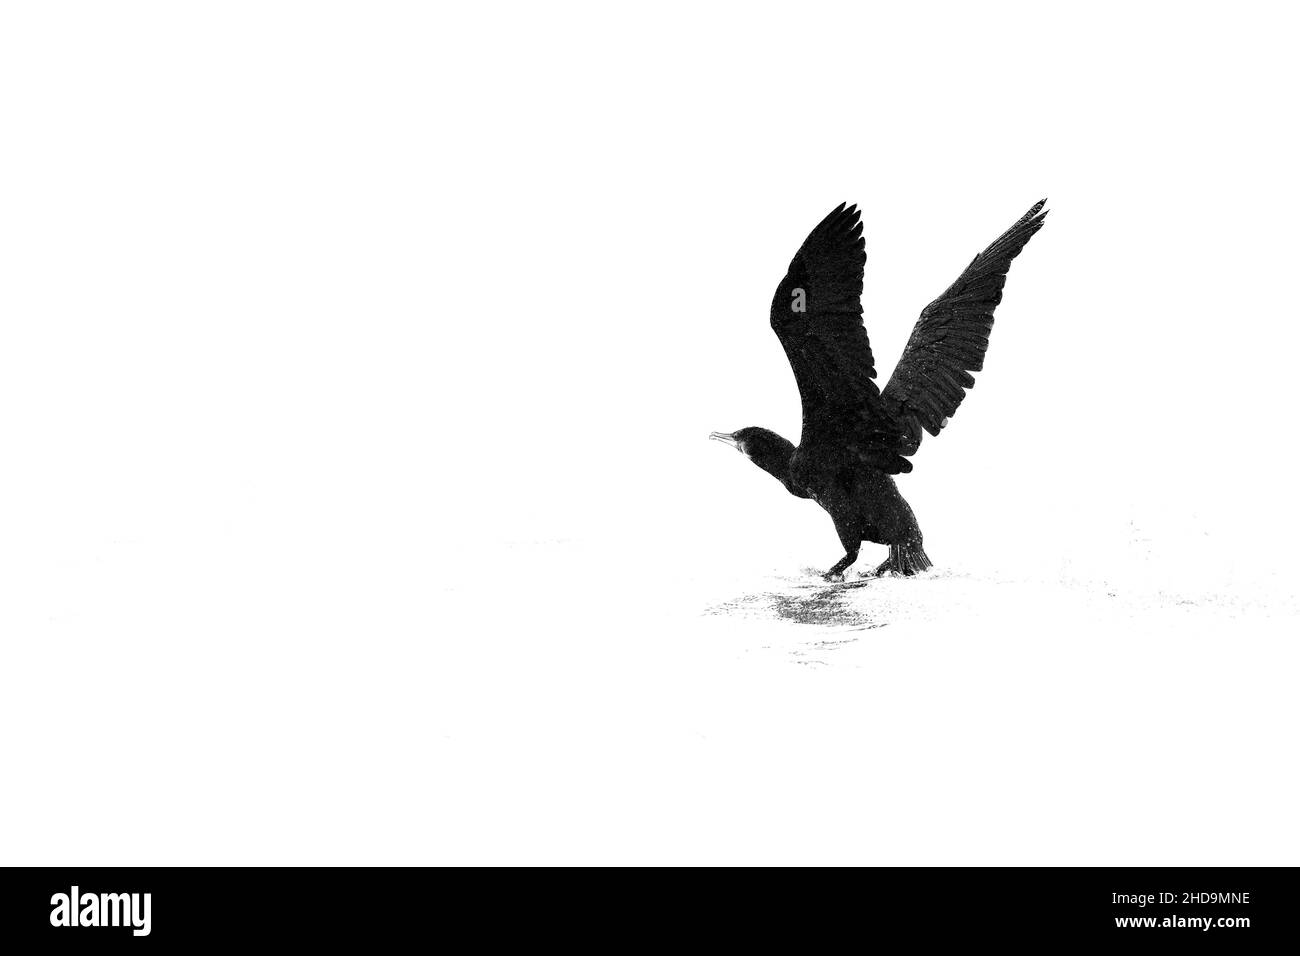 Prise de vue en niveaux de gris d'un Eagle prêt à voler isolé sur un arrière-plan blanc avec espace de copie Banque D'Images